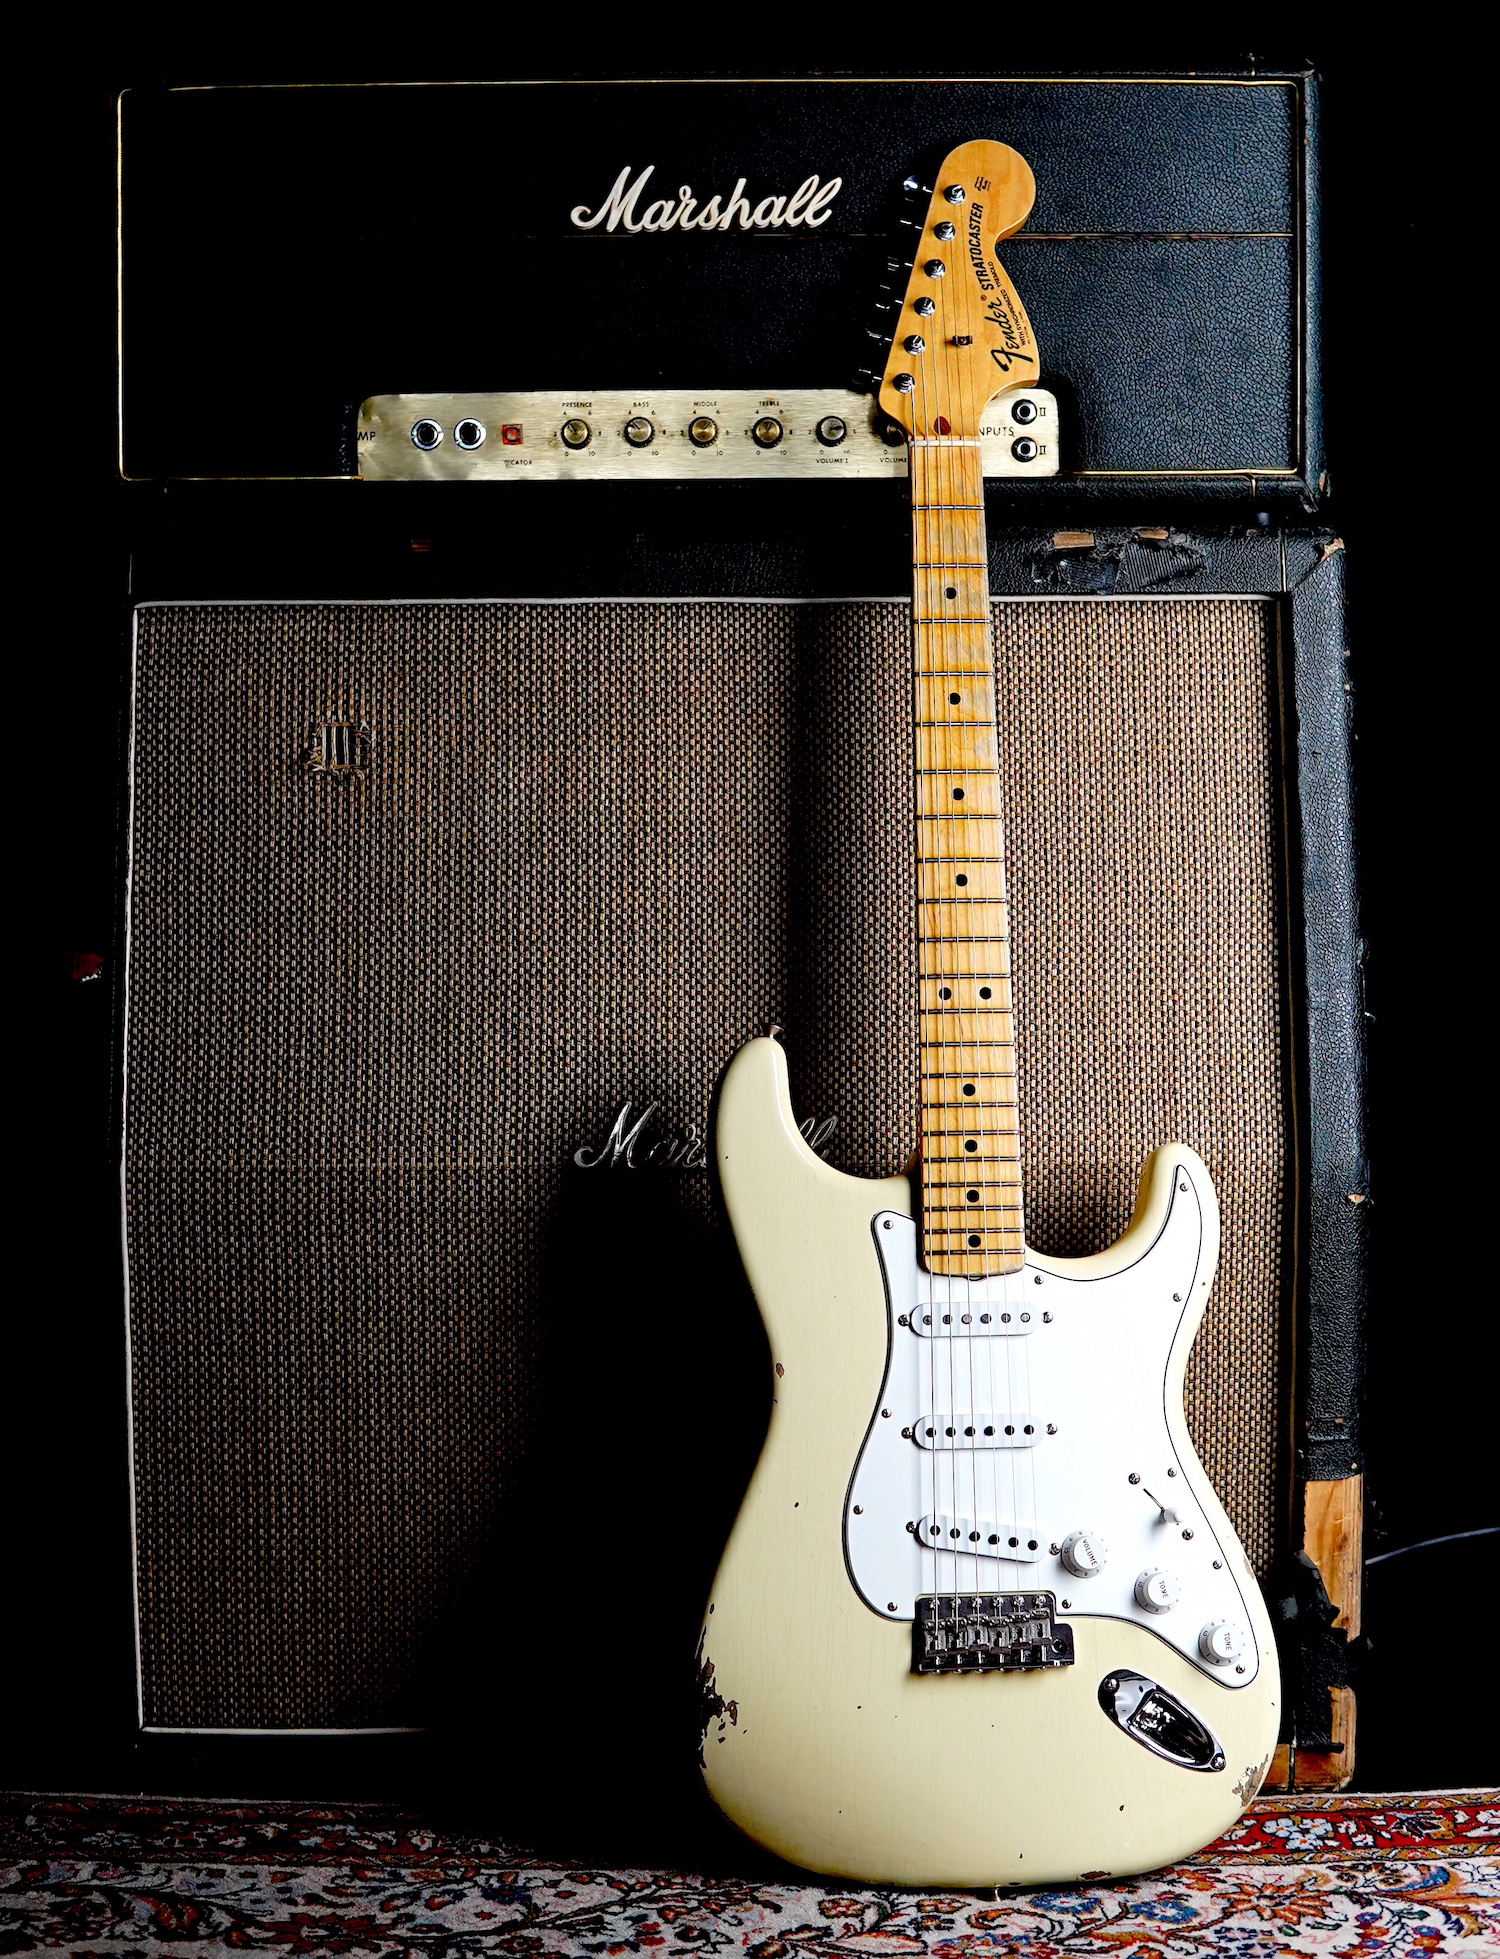 https://www.kloppmann-electrics.com/media/image/8b/fc/65/Fender-Stratocaster-1972-Commission.jpg